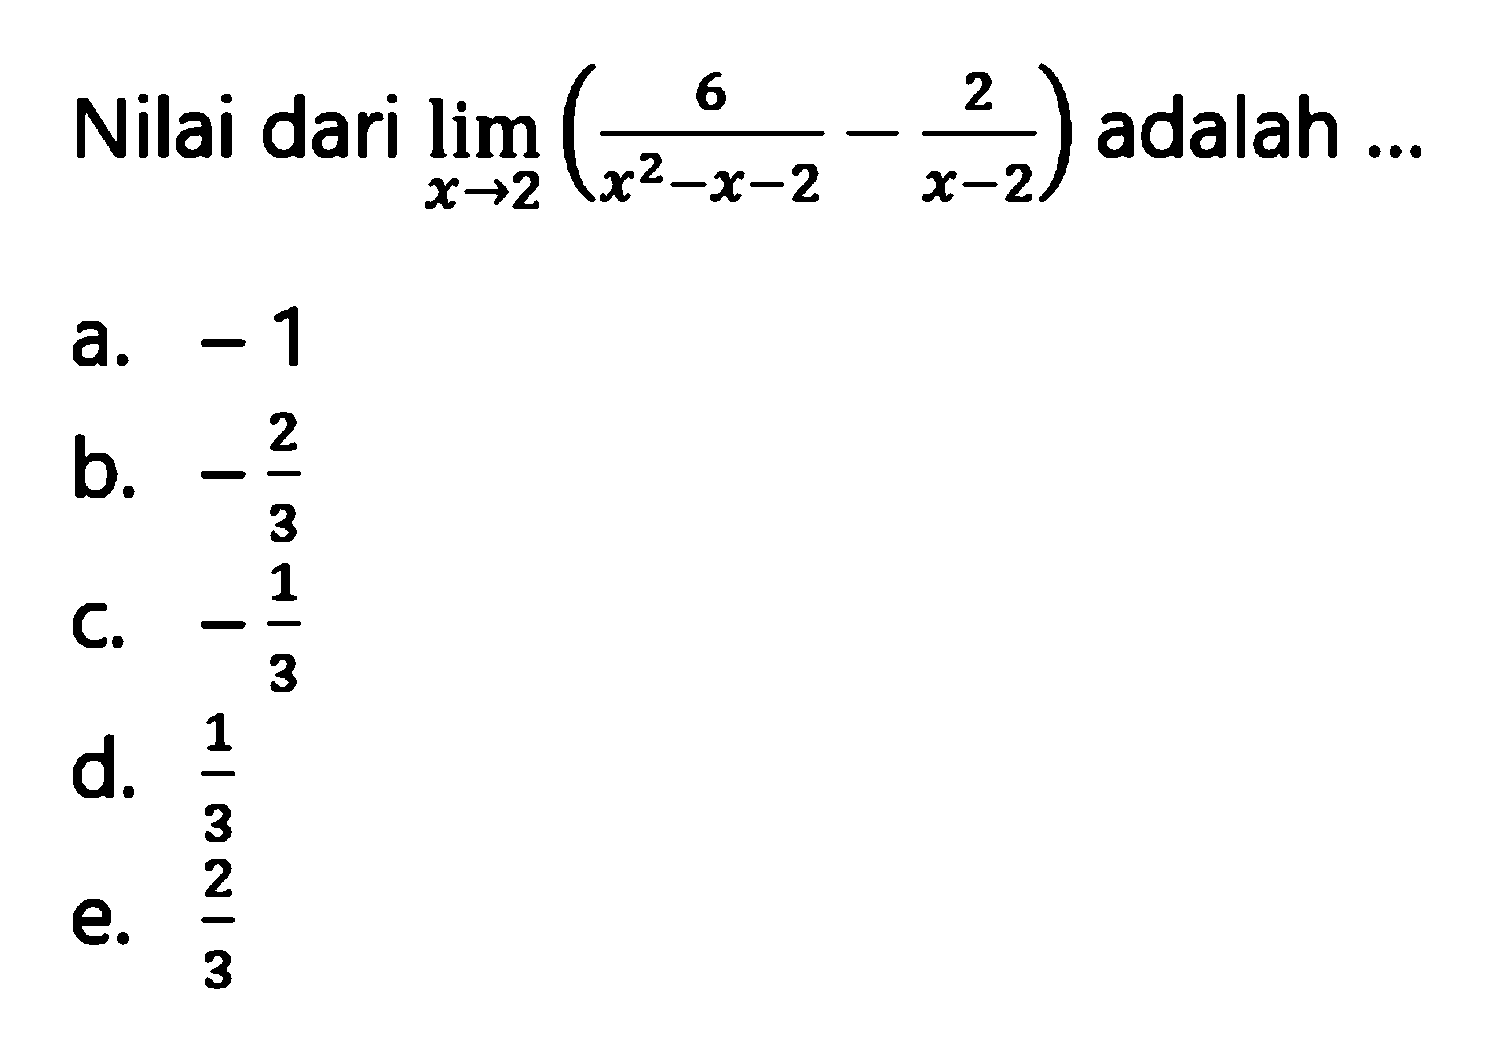 Nilai dari  lim x->2 (6/(x^2-x-2)-2/(x-2))  adalah ...